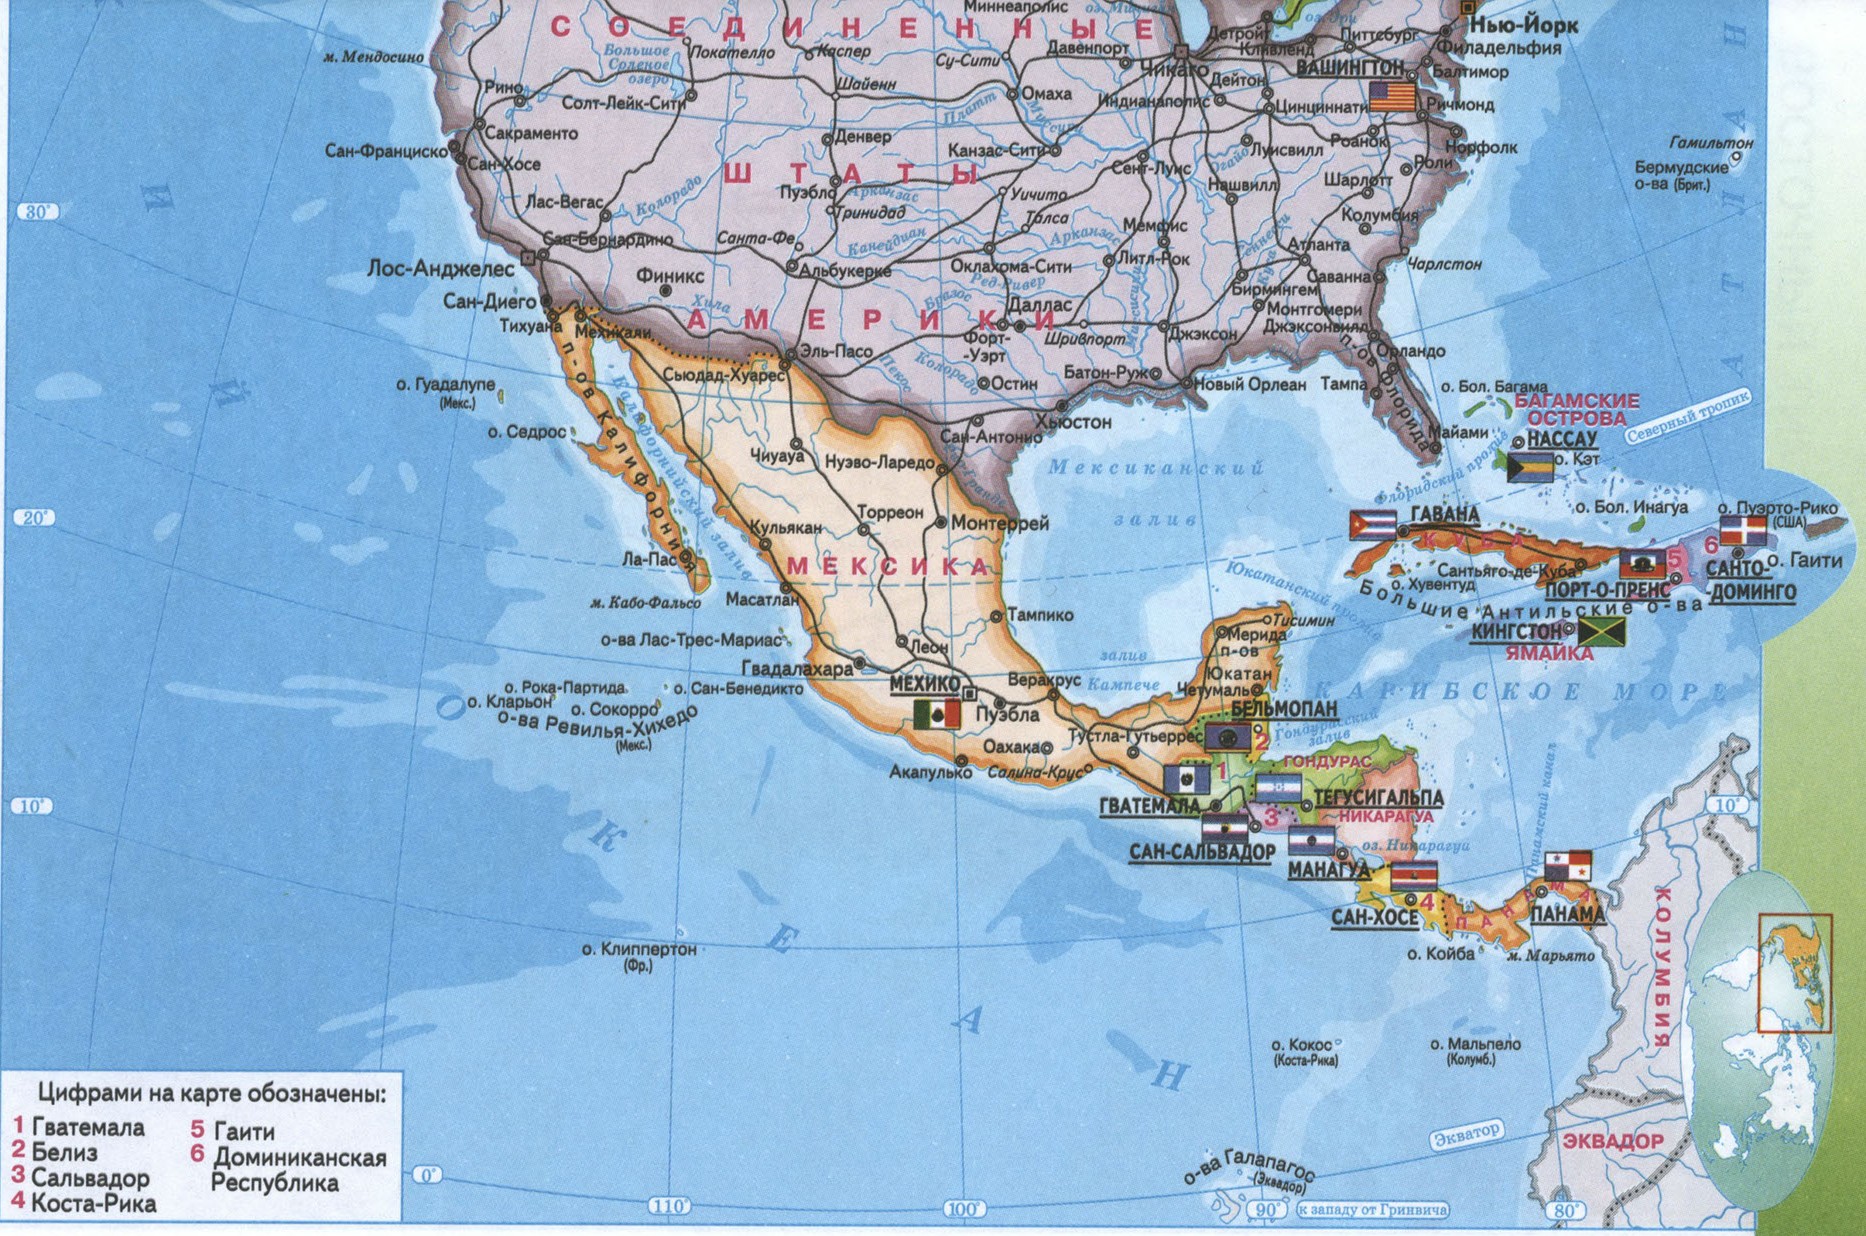 Карта америки. Карта Америки на русском. Карта Северной Америки со странами и столицами. Политическая карта Северной Америки. Северная Америка на карте со странами и столицами на русском.